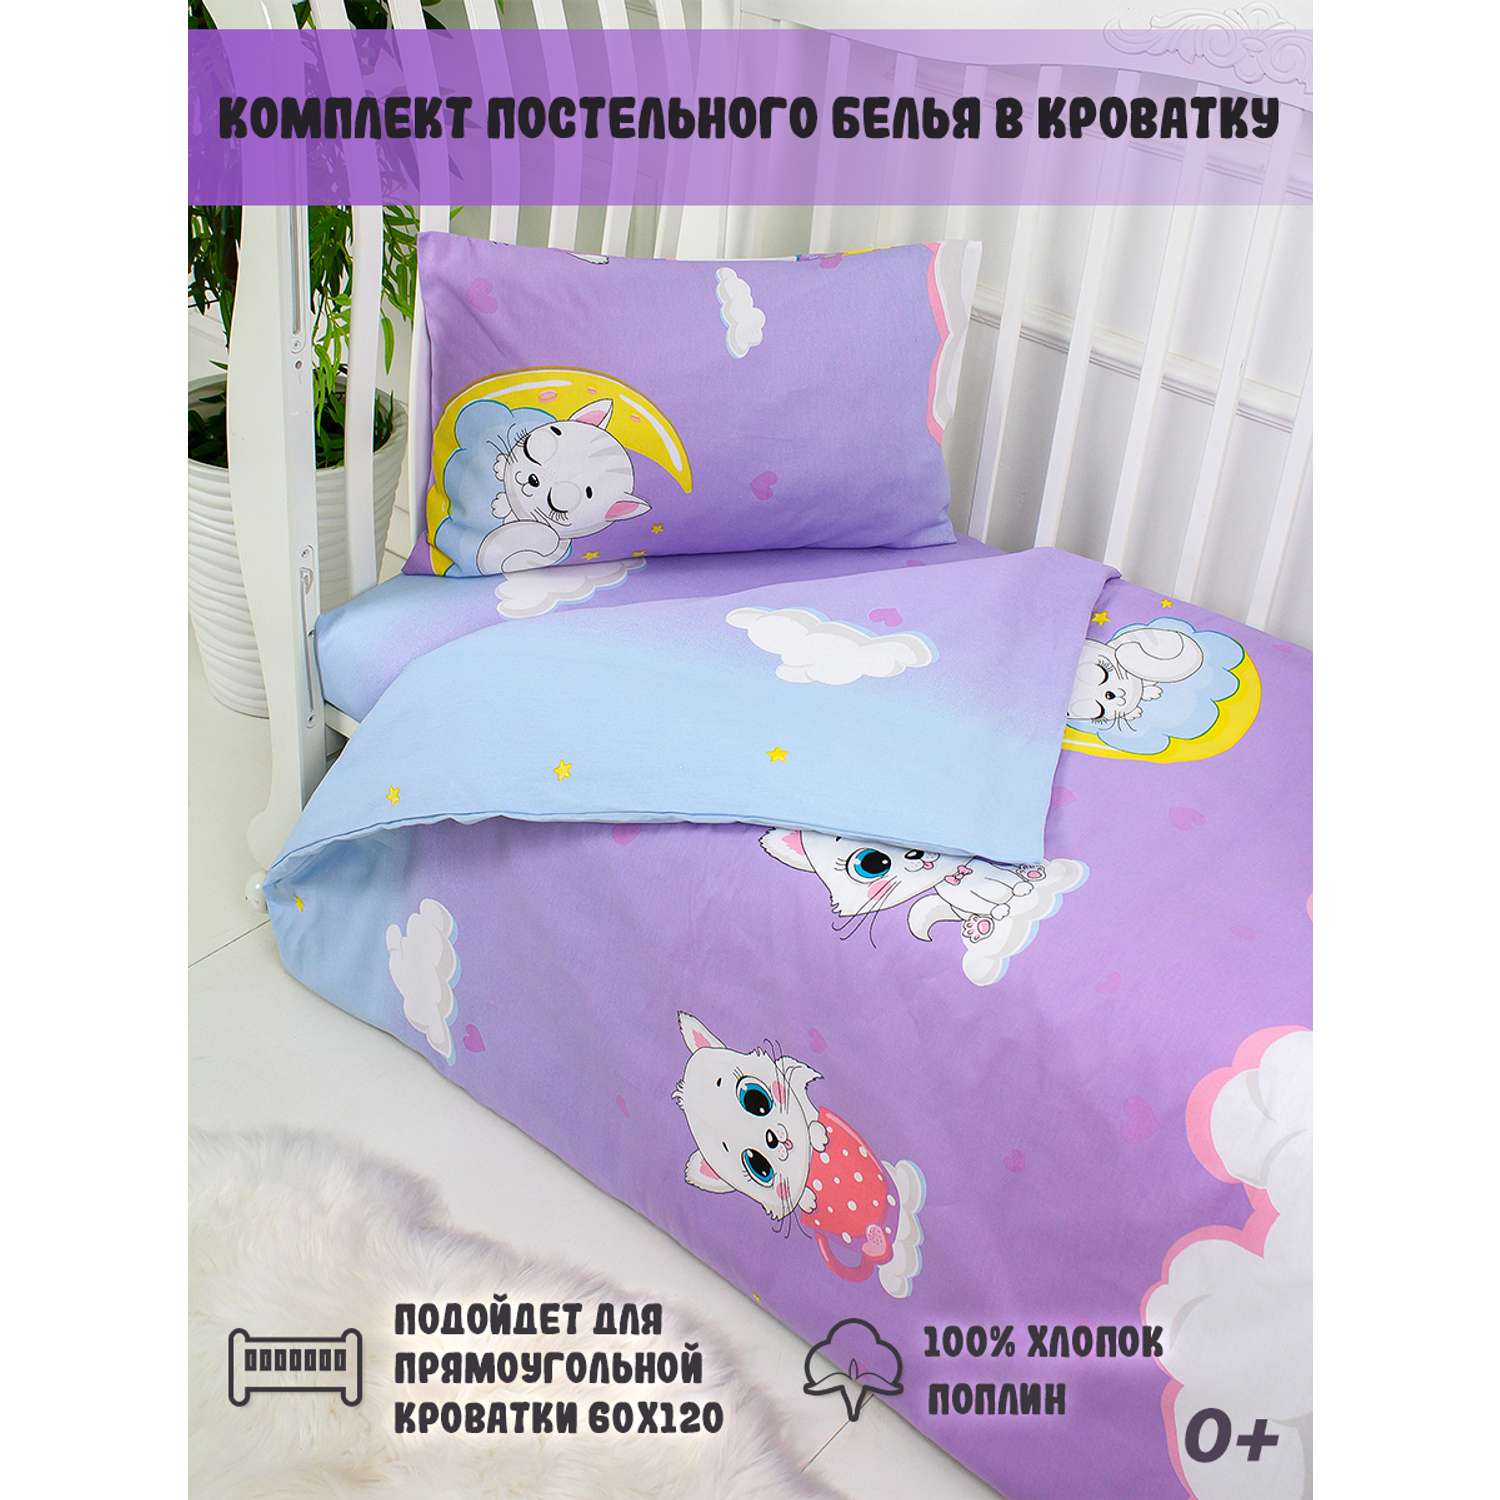 Комплект постельного белья ТК Русский Дом в кроватку 866-1 - фото 1